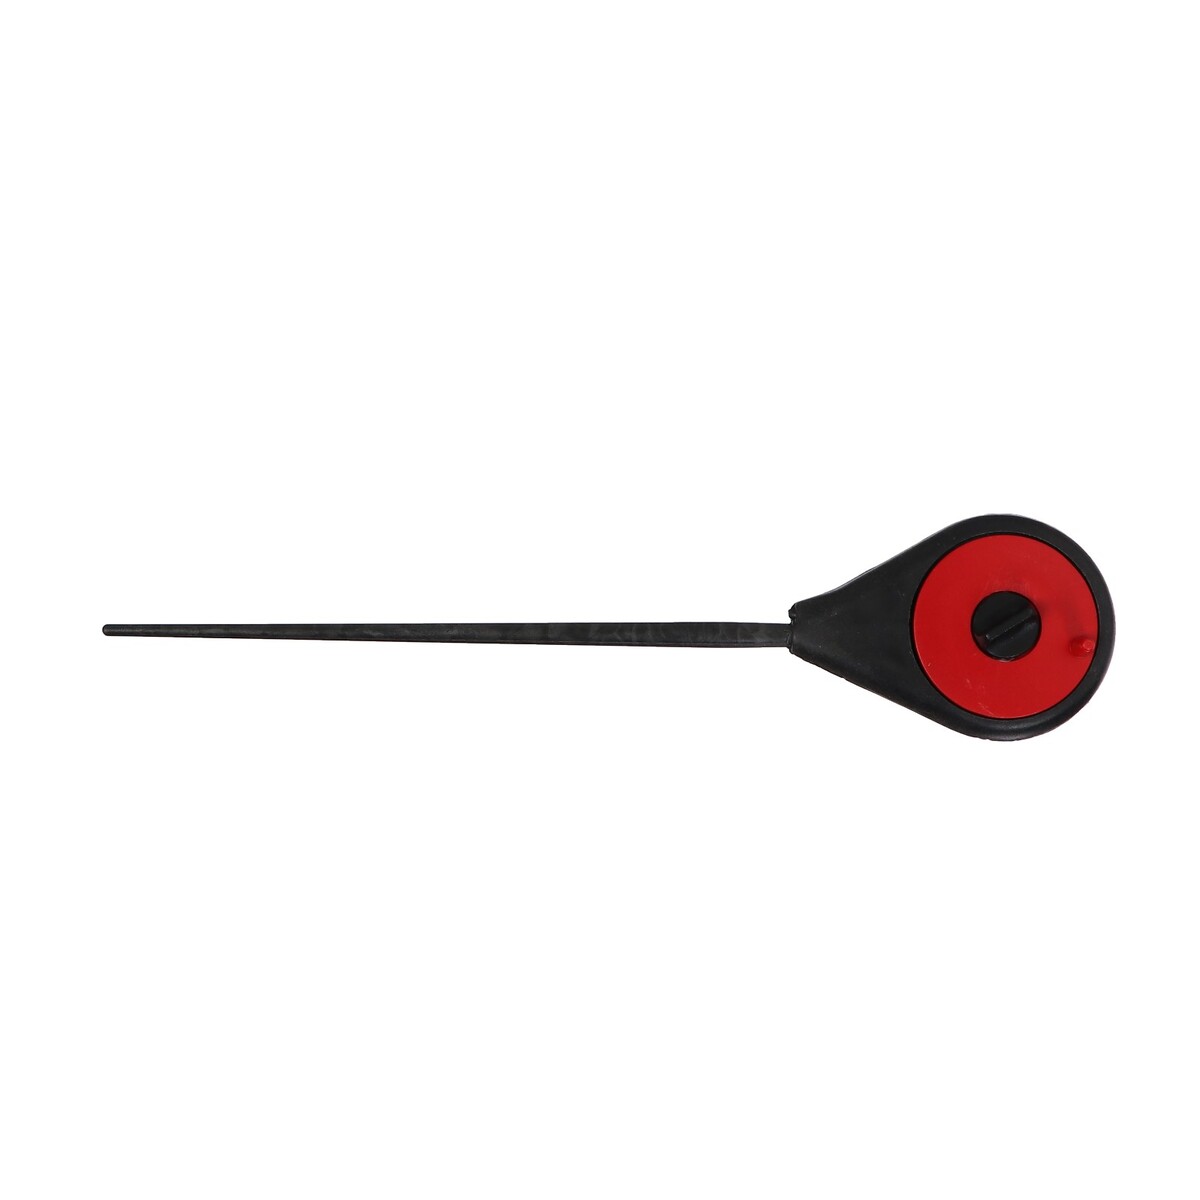 Удочка зимняя балалайка, диаметр катушки 4.5 см, цвет черный красный, hfb-18 No brand